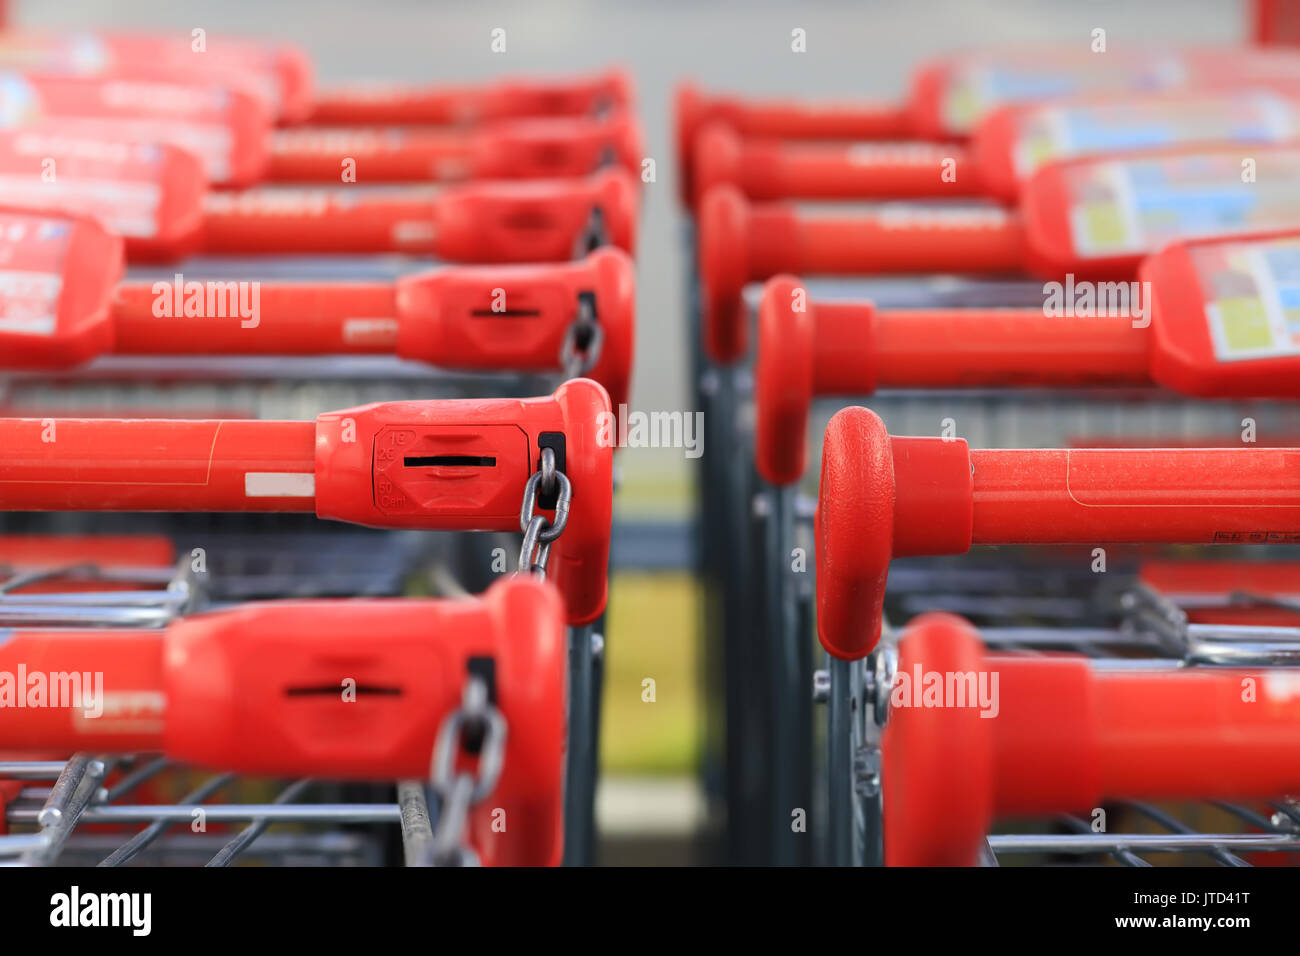 Rote Griffe von Einkaufswagen in Reihe stehen. Einkaufswagen Griffe close-up. Stockfoto